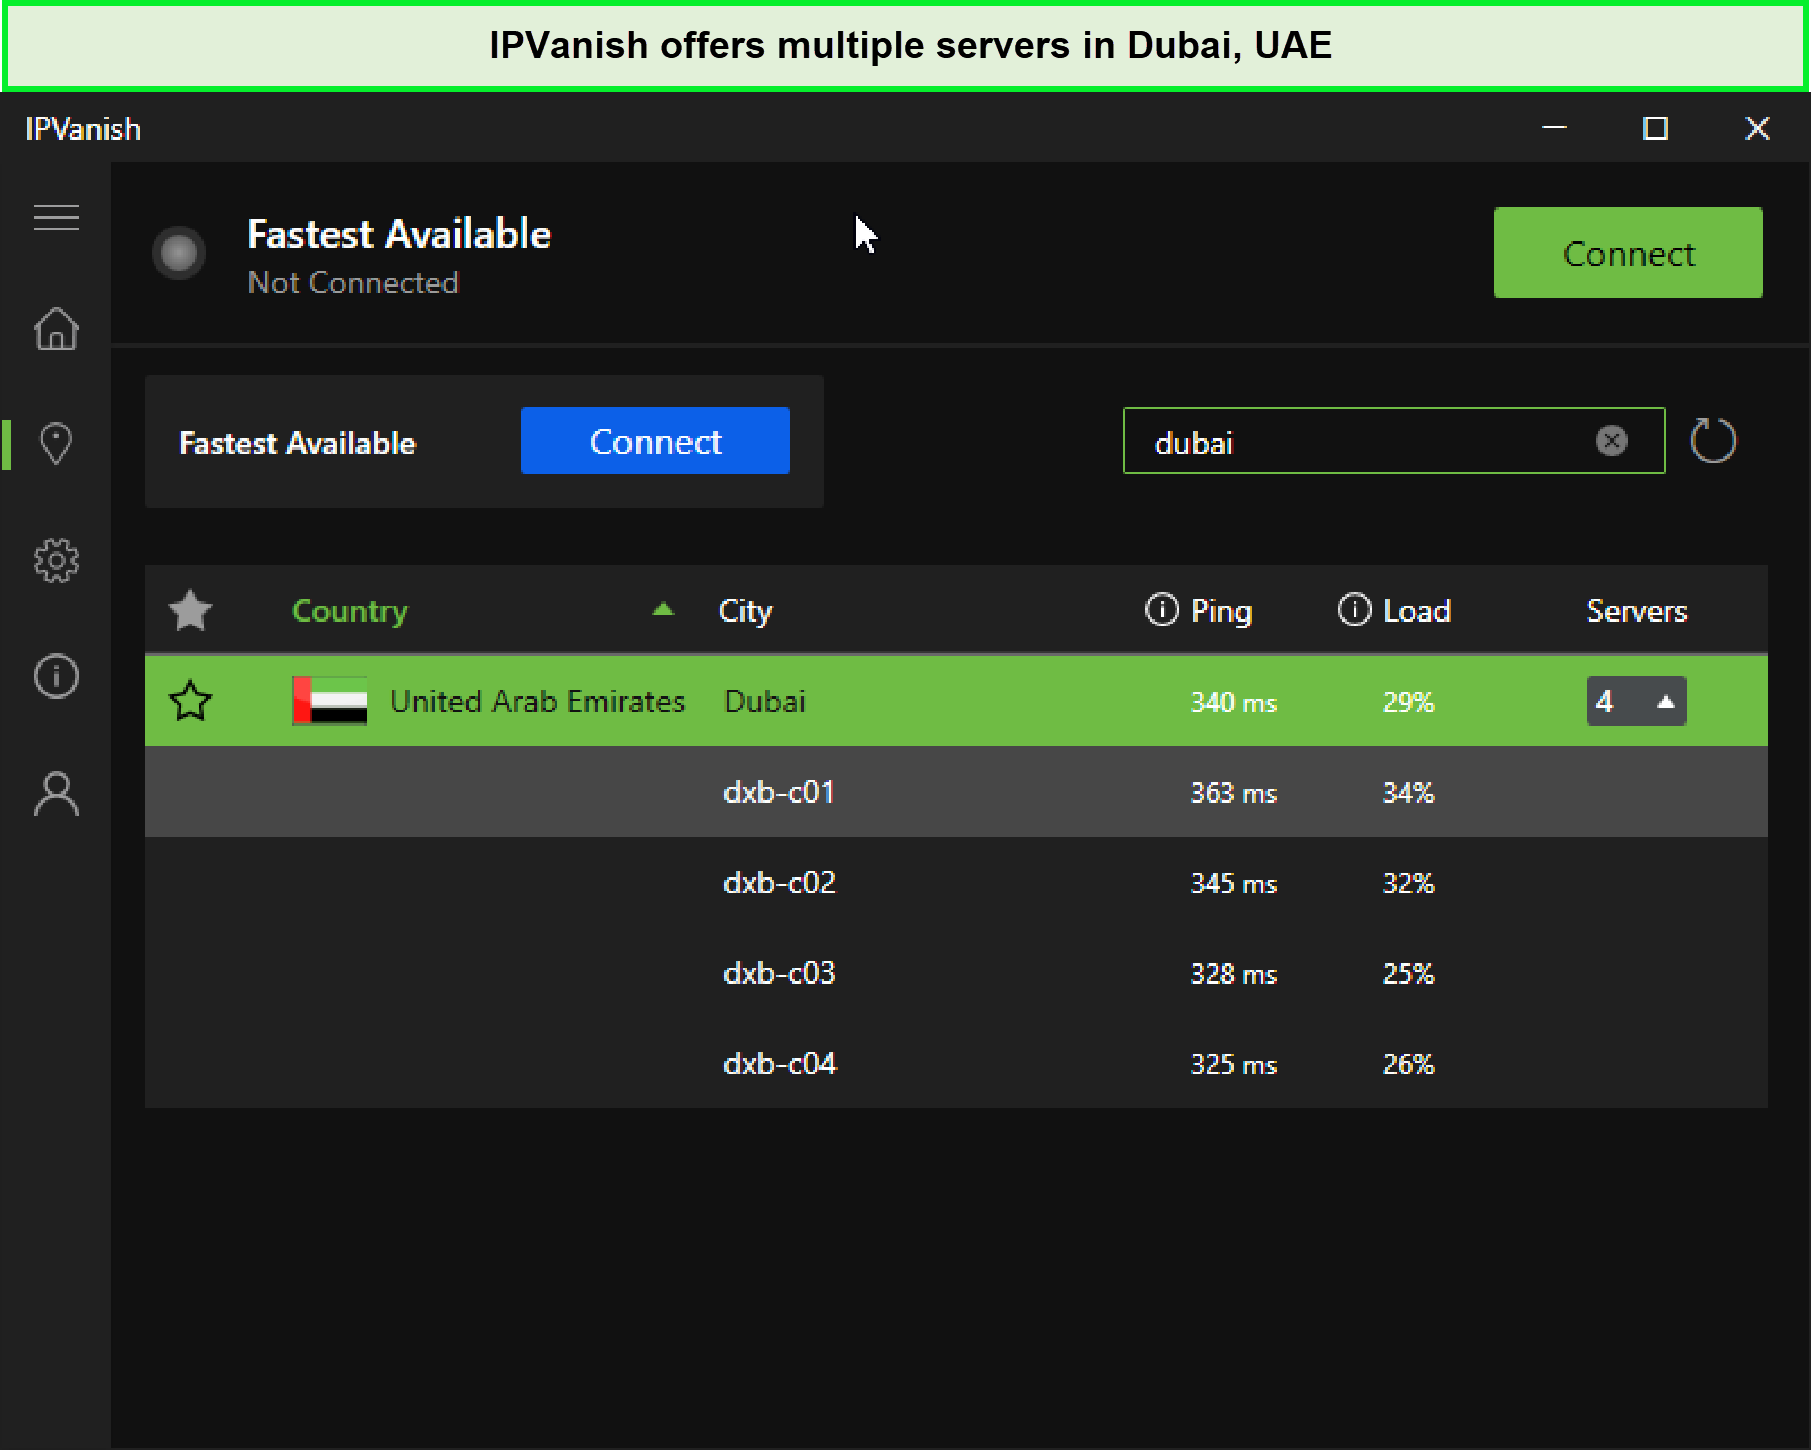 ipvanish-uae-servers-For UAE Users